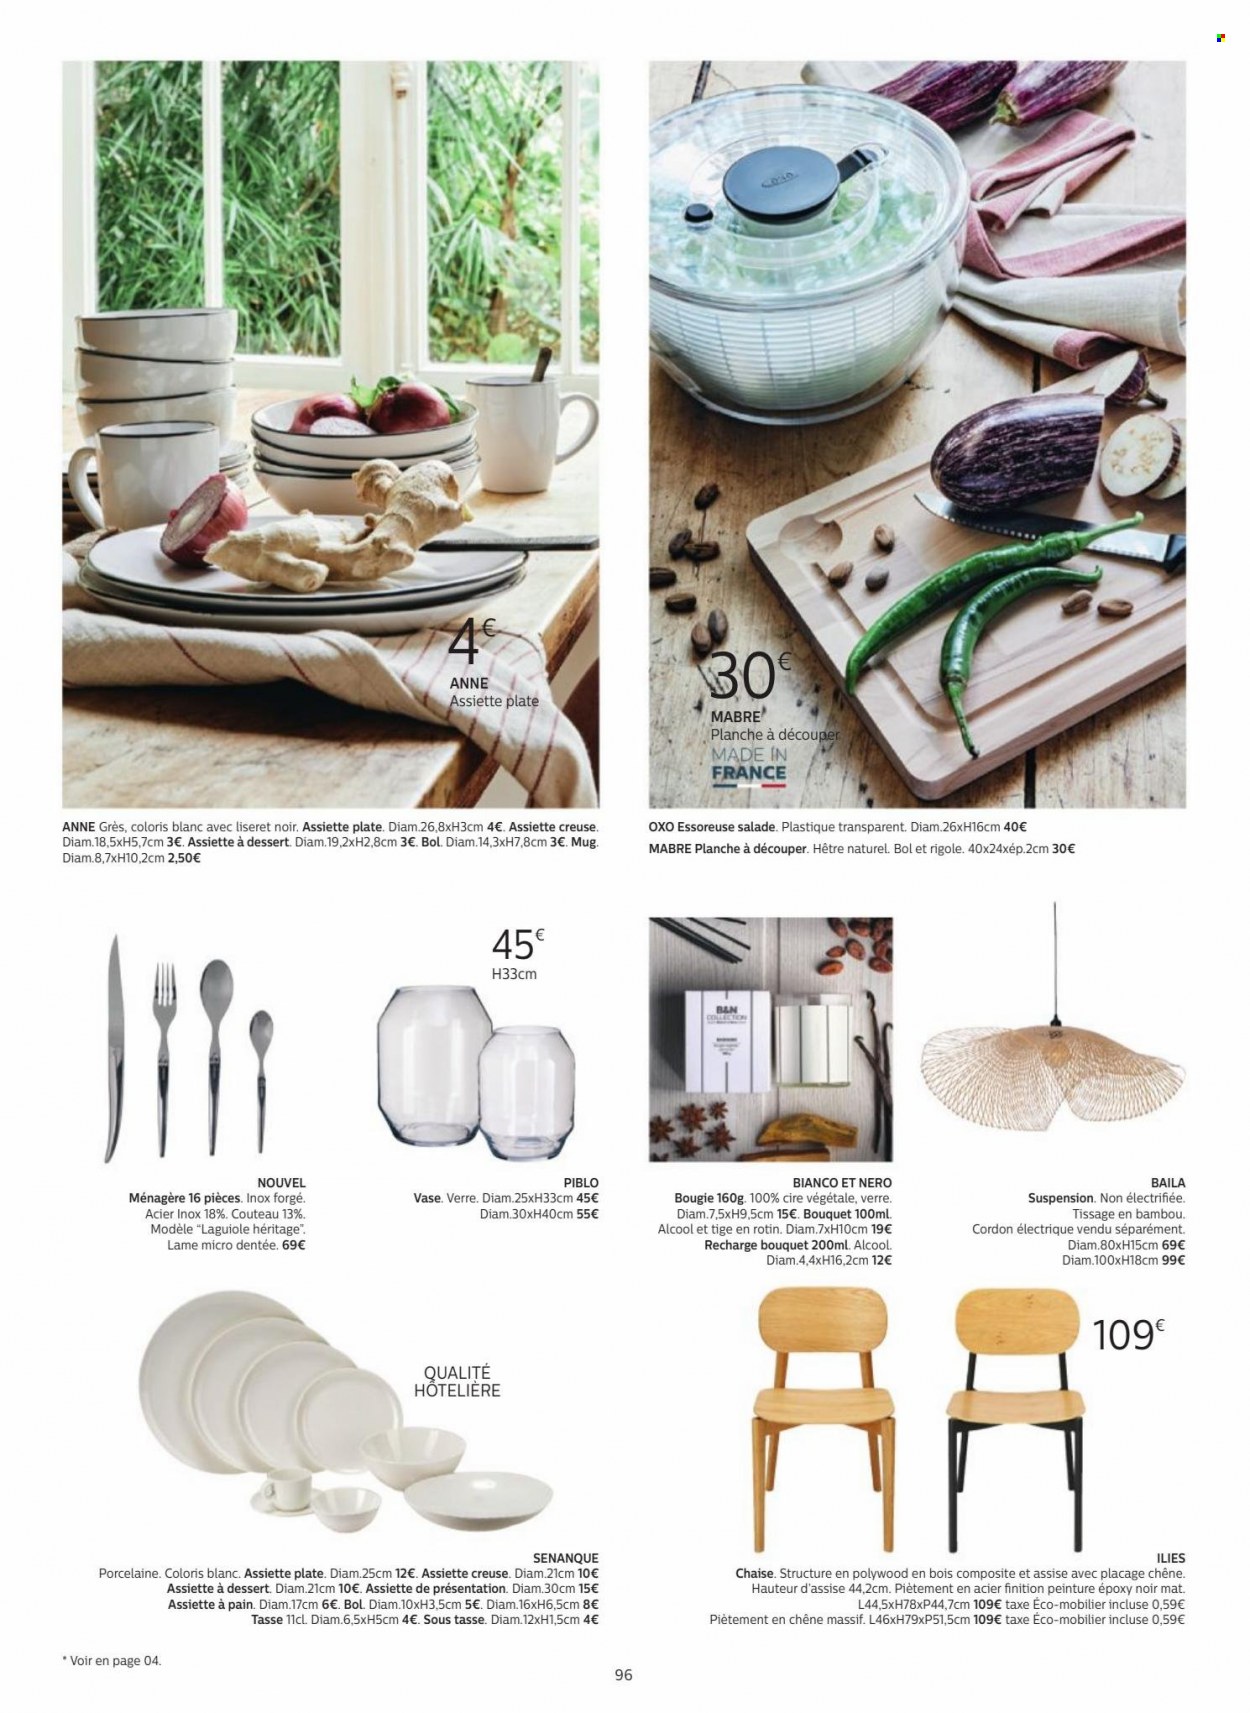 thumbnail - Catalogue alinea - Produits soldés - chaise, couteau, mug, ménagère, verre, planche à découper, bougie, vase. Page 96.